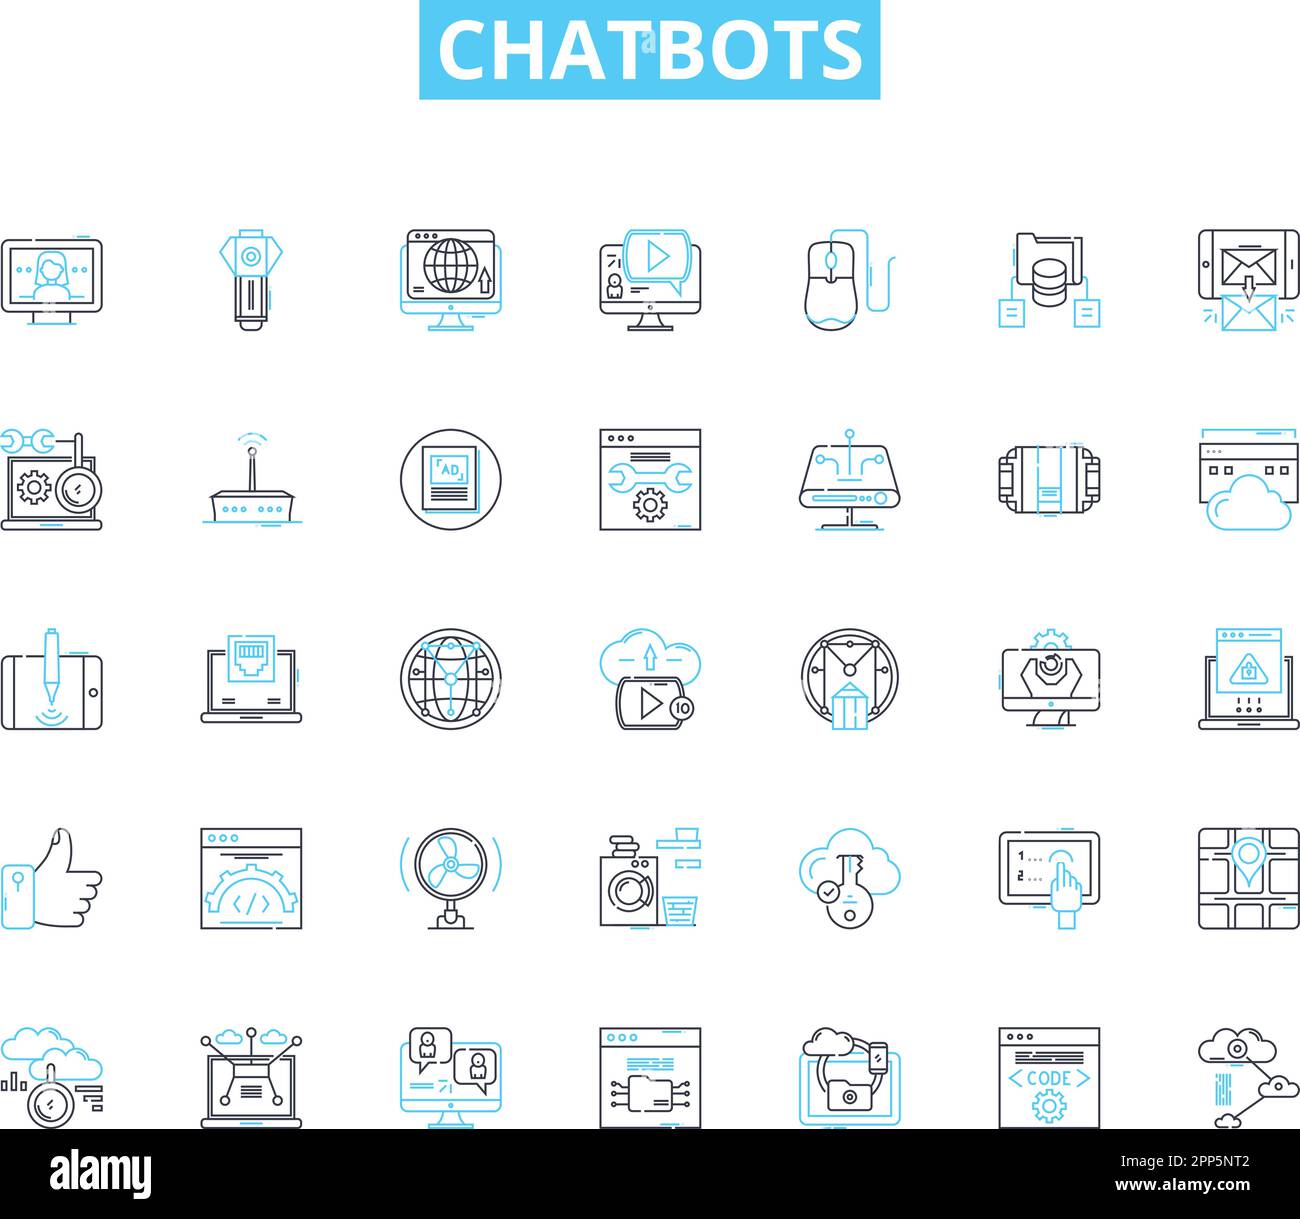 Icone lineari chatbot set. Automazione, conversazione, interazione, intelligenza, intelligenza artificiale, Assistenza, coinvolgimento di vettori di linea e segnali concettuali. Facile da usare Illustrazione Vettoriale